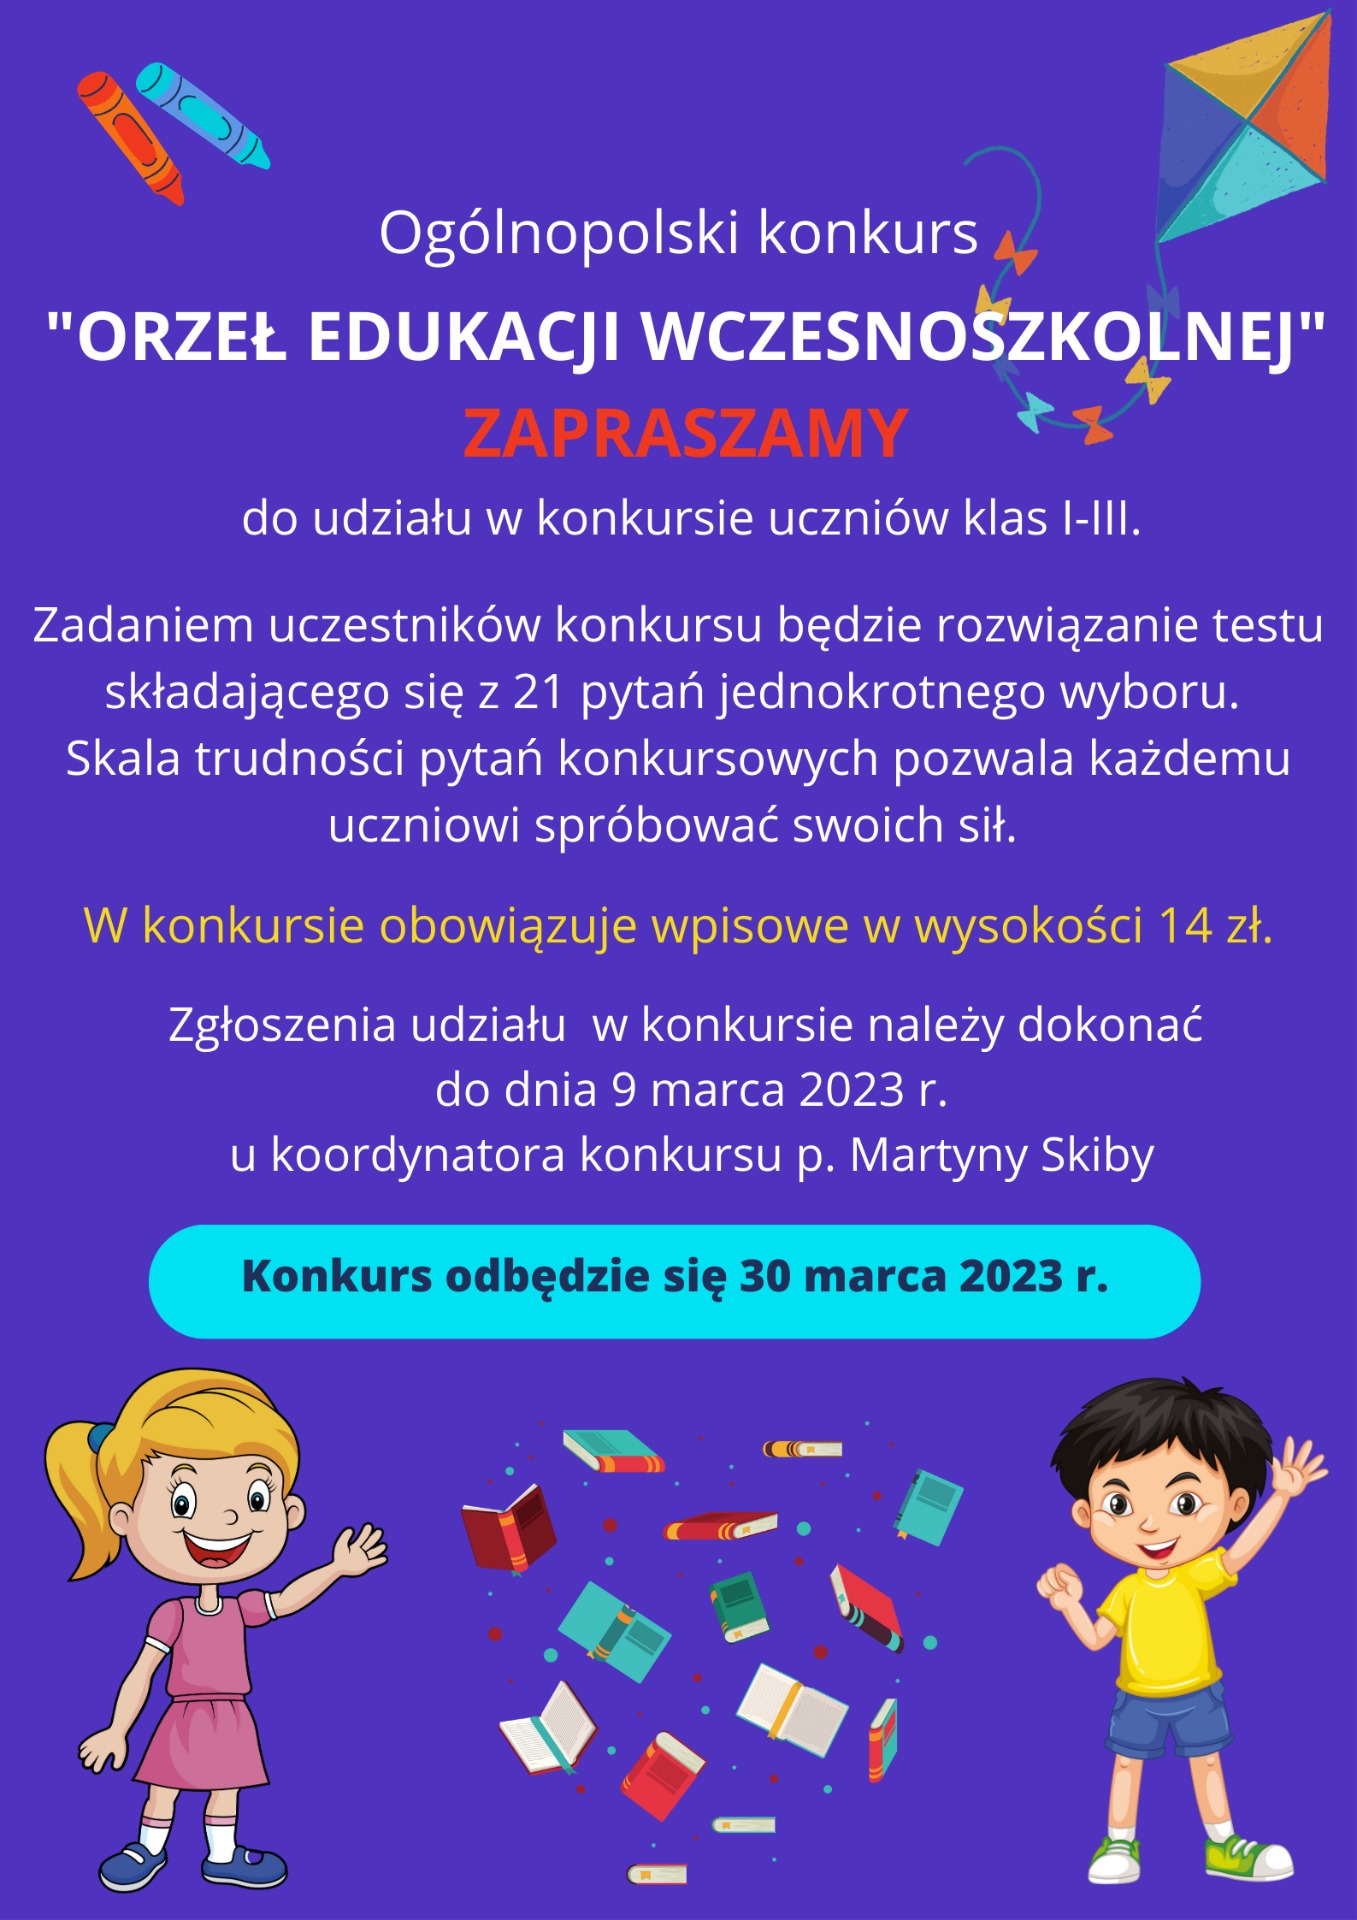 Ogólnopolski konkurs "Orzeł Edukacji Wczesnoszkolnej" - Obrazek 1